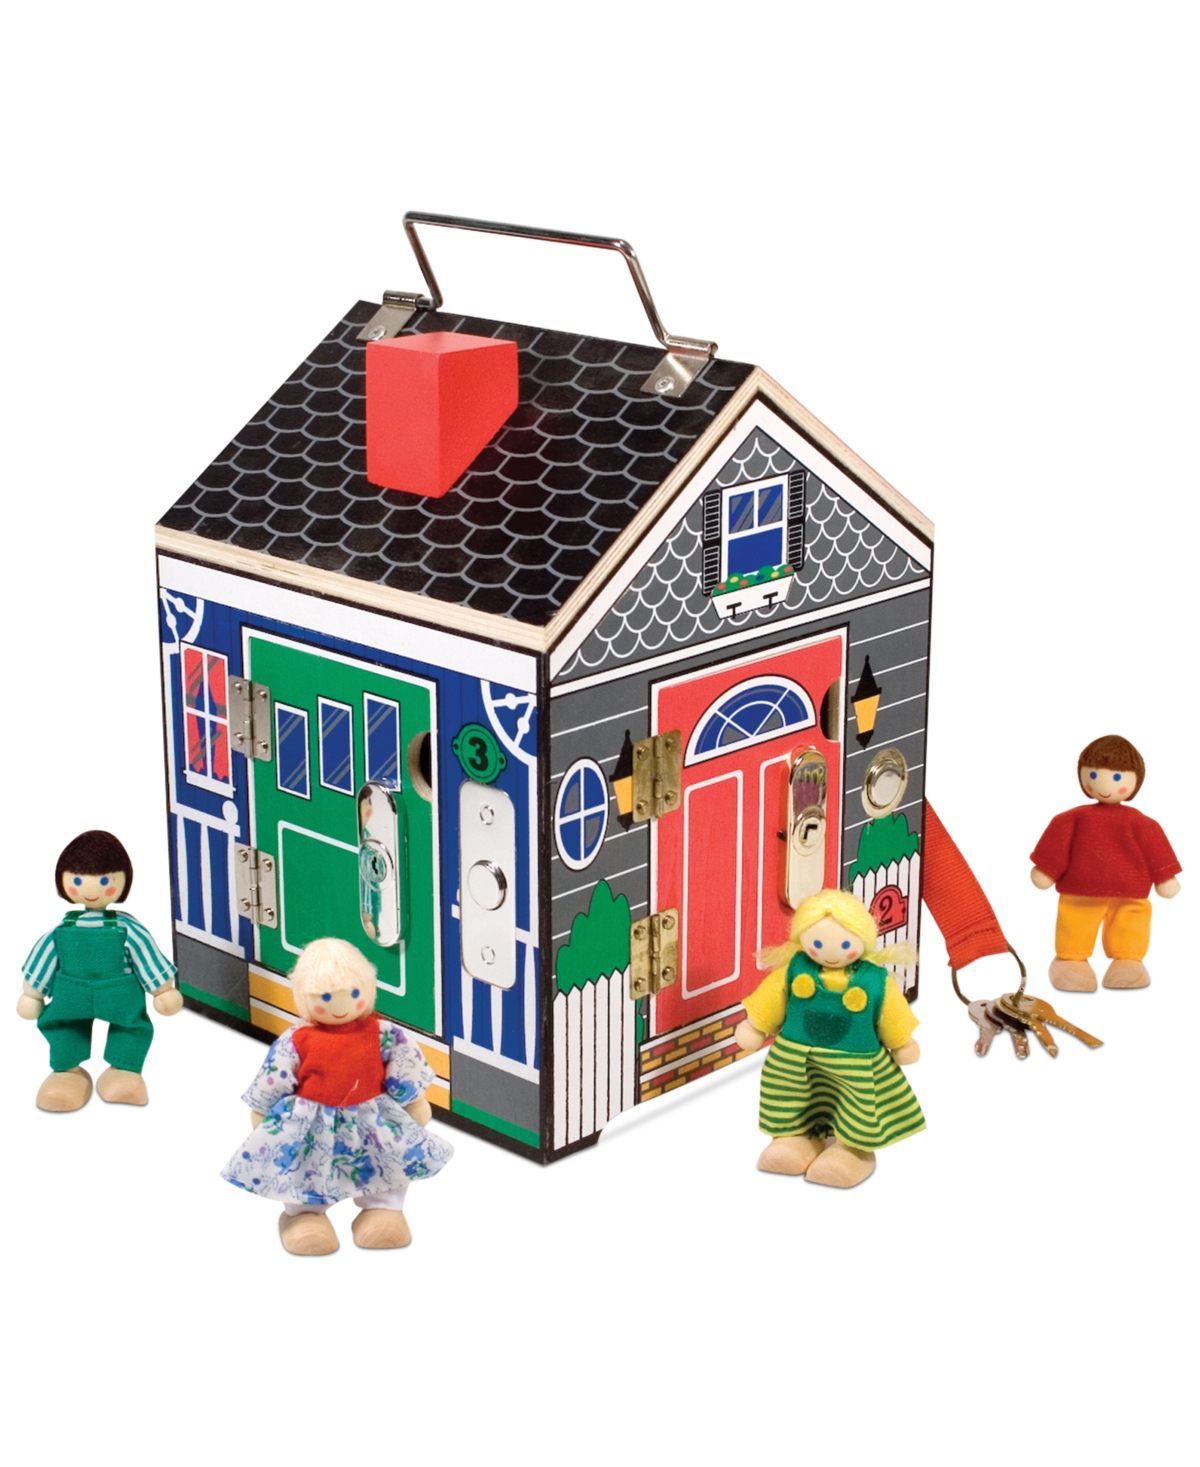 Melissa & Doug Kids Toy, Doorbell House In Multi